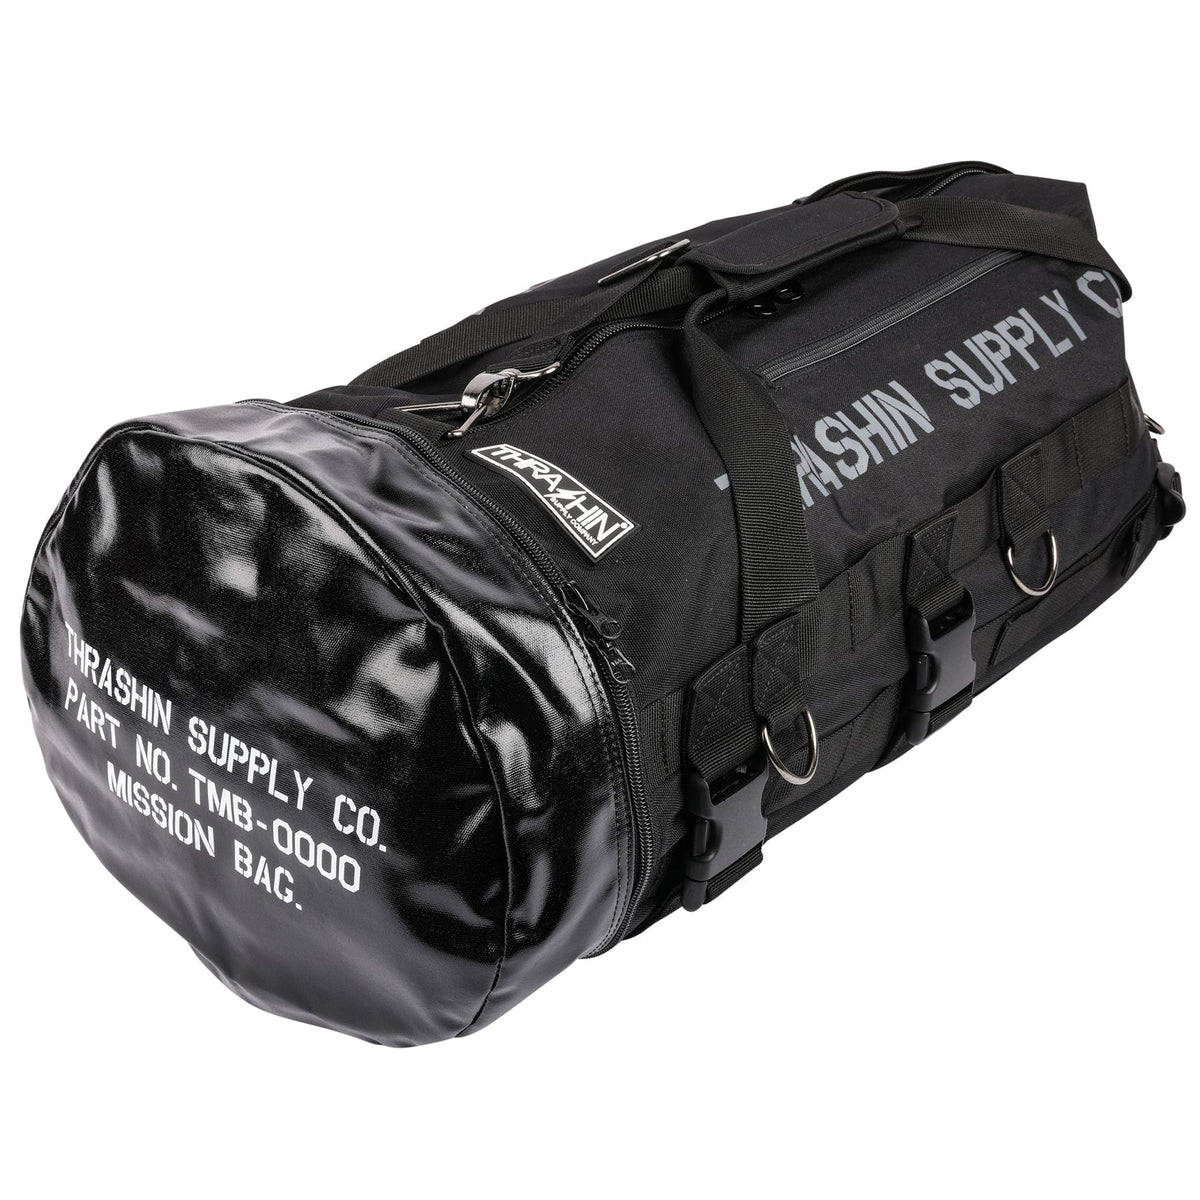 Mission Duffle Bag